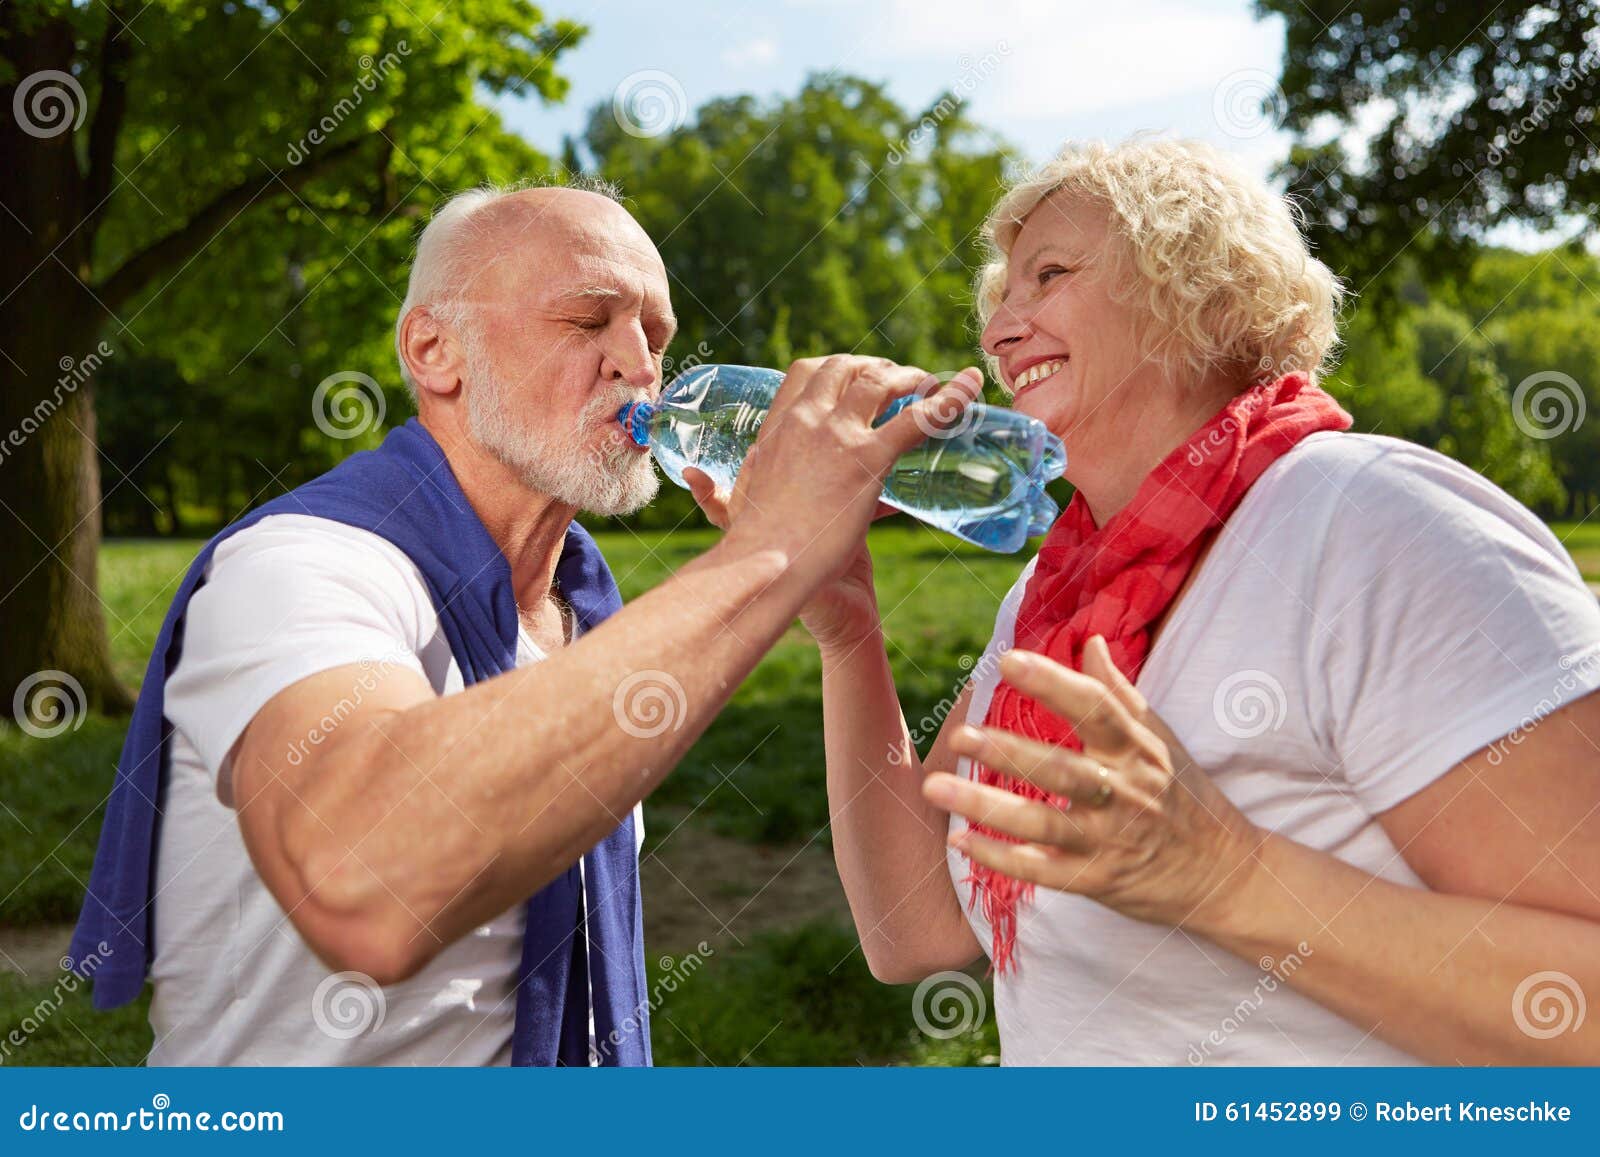 Он старше и пьет. Пожилой человек пьет воду. Чистая вода для питья для пенсионеров. Пенсионеры пьют воду. Пенсионер в воде.